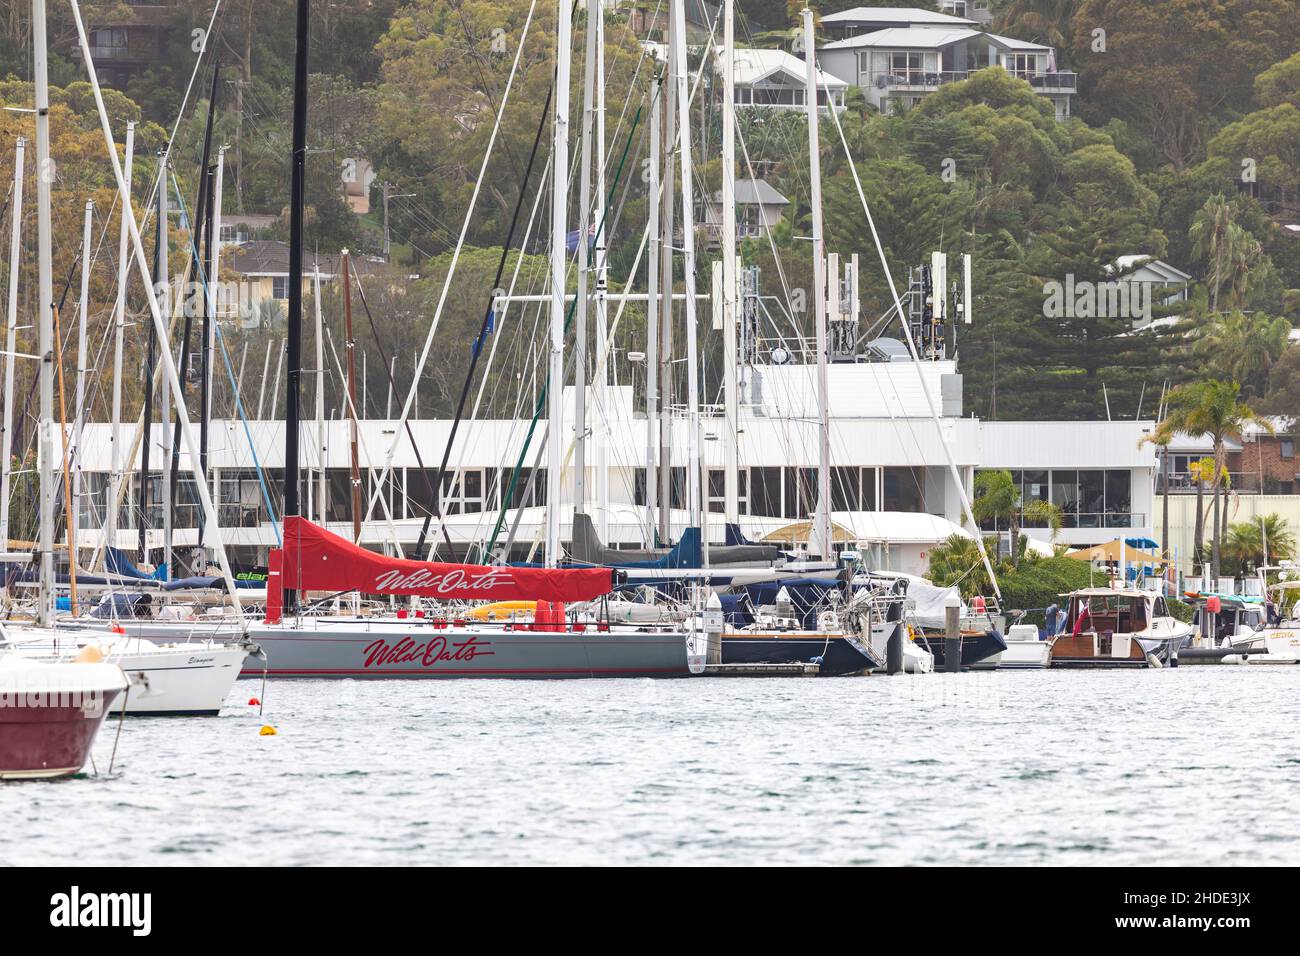 Wild Oats x voilier de course au Royal prince alfred Yacht club à pittwater, Sydney, Nouvelle-Galles du Sud, Australie Banque D'Images